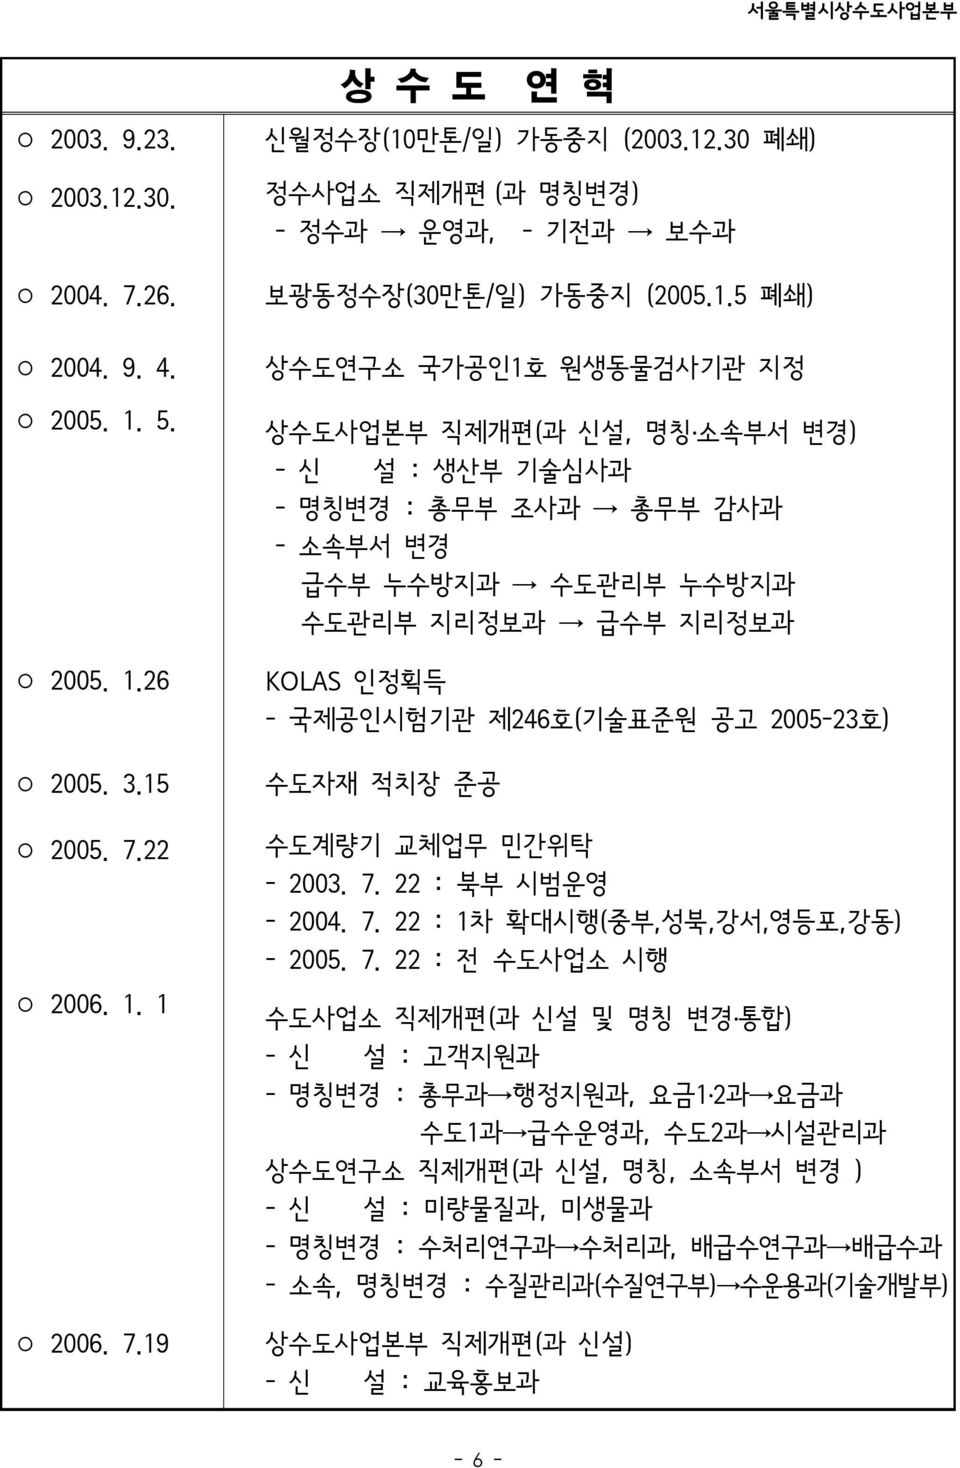 2005-23호) 수도자재 적치장 준공 수도계량기 교체업무 민간위탁 - 2003. 7.